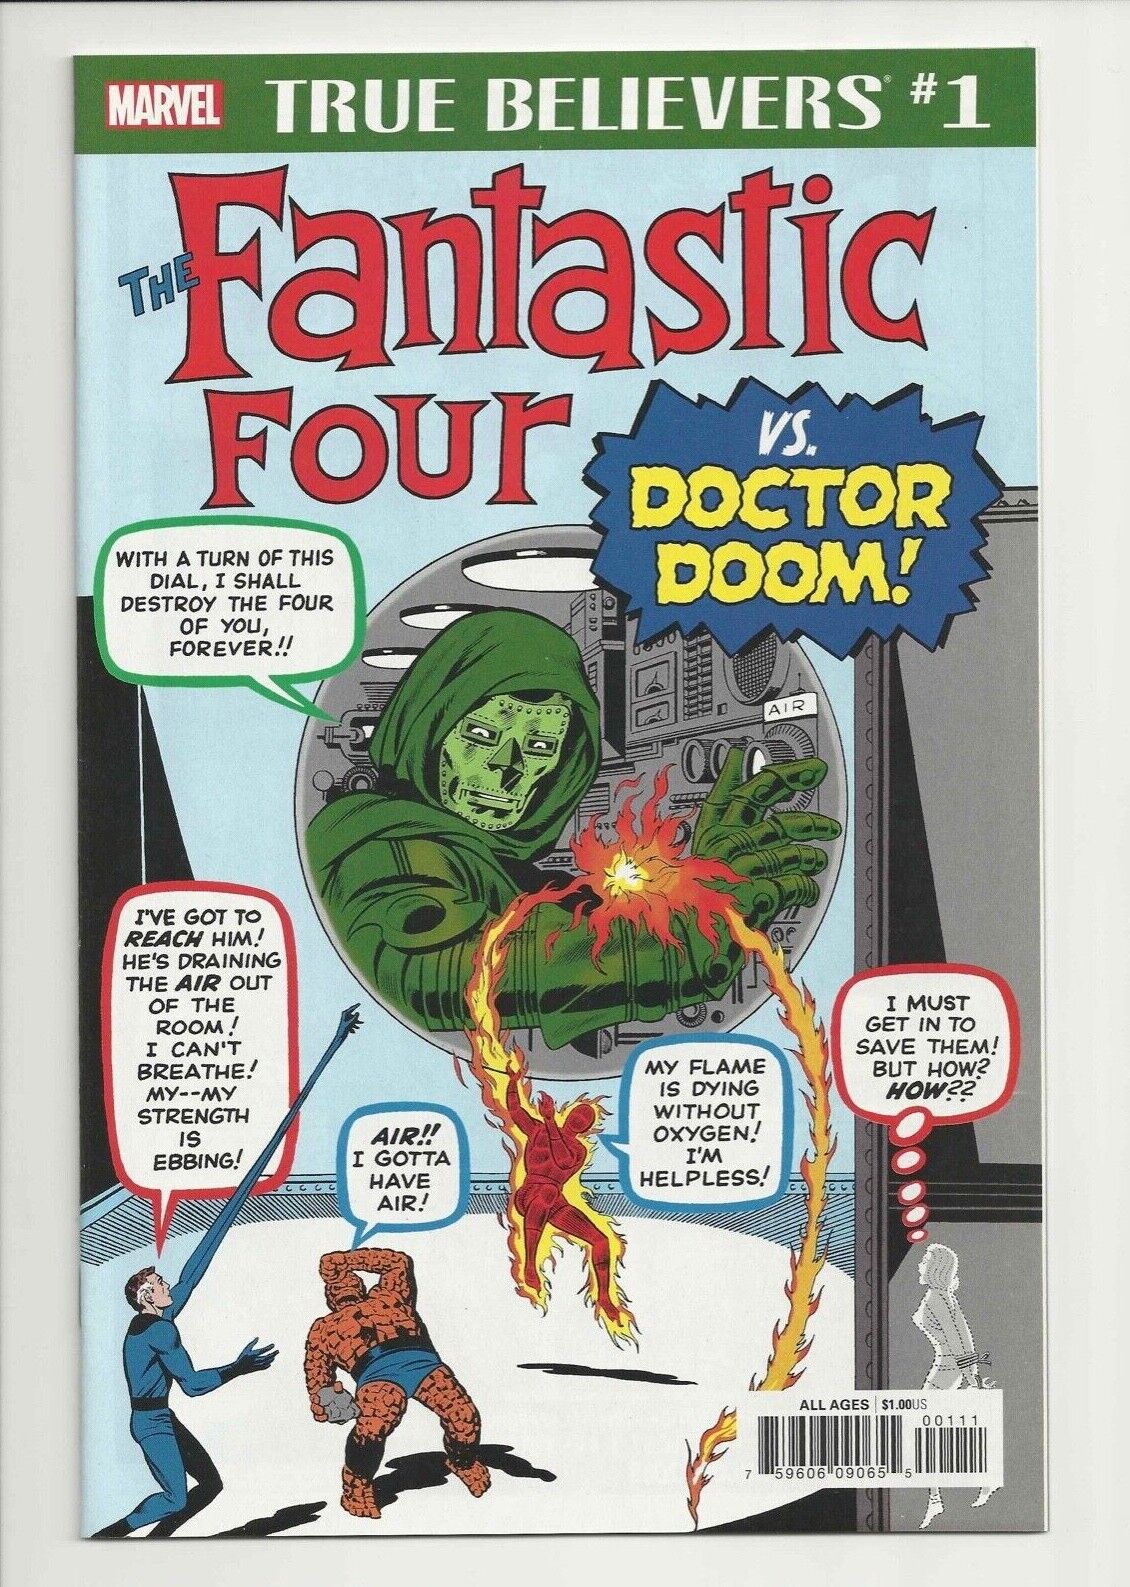 True Believers: Fantastic Four vs Doctor Doom *REPRINTS* 1st Doctor Doom *NM*